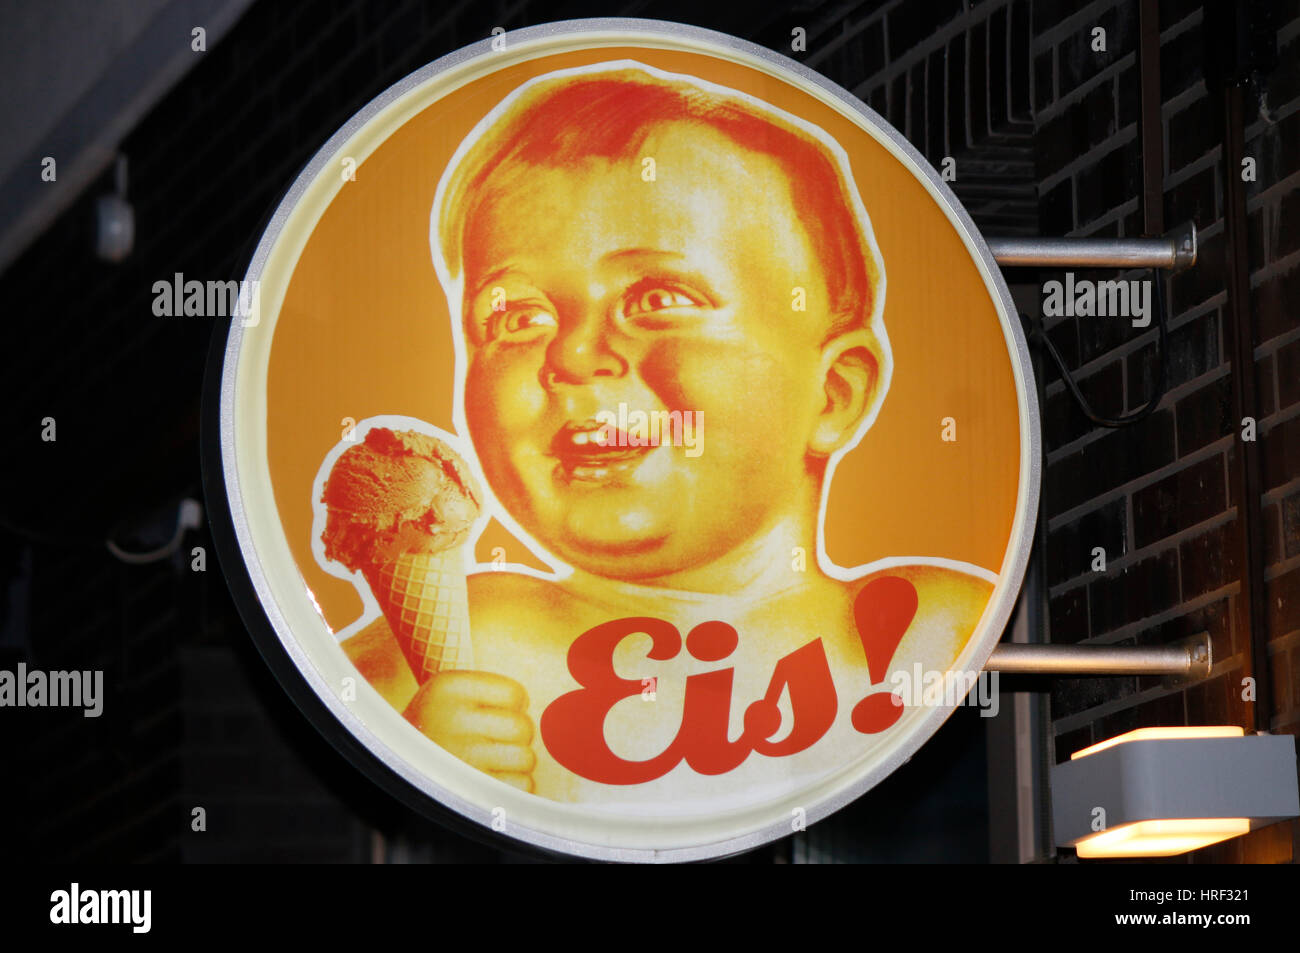 eine alte Werbung fuer 'Eis'', Berlin. Stock Photo